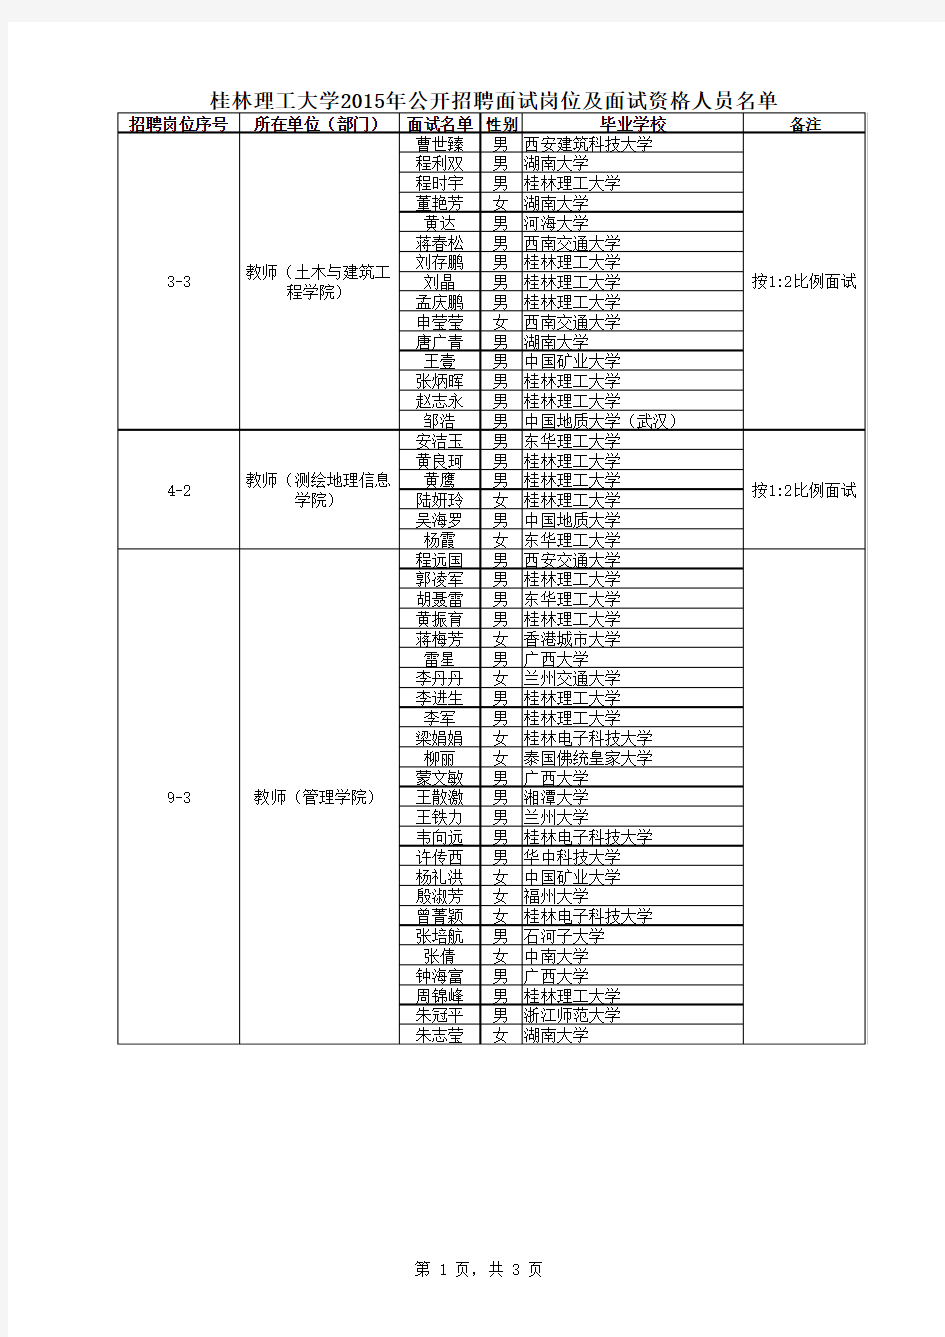 桂林理工大学2015年公开招聘面试岗位及面试资格人员名单